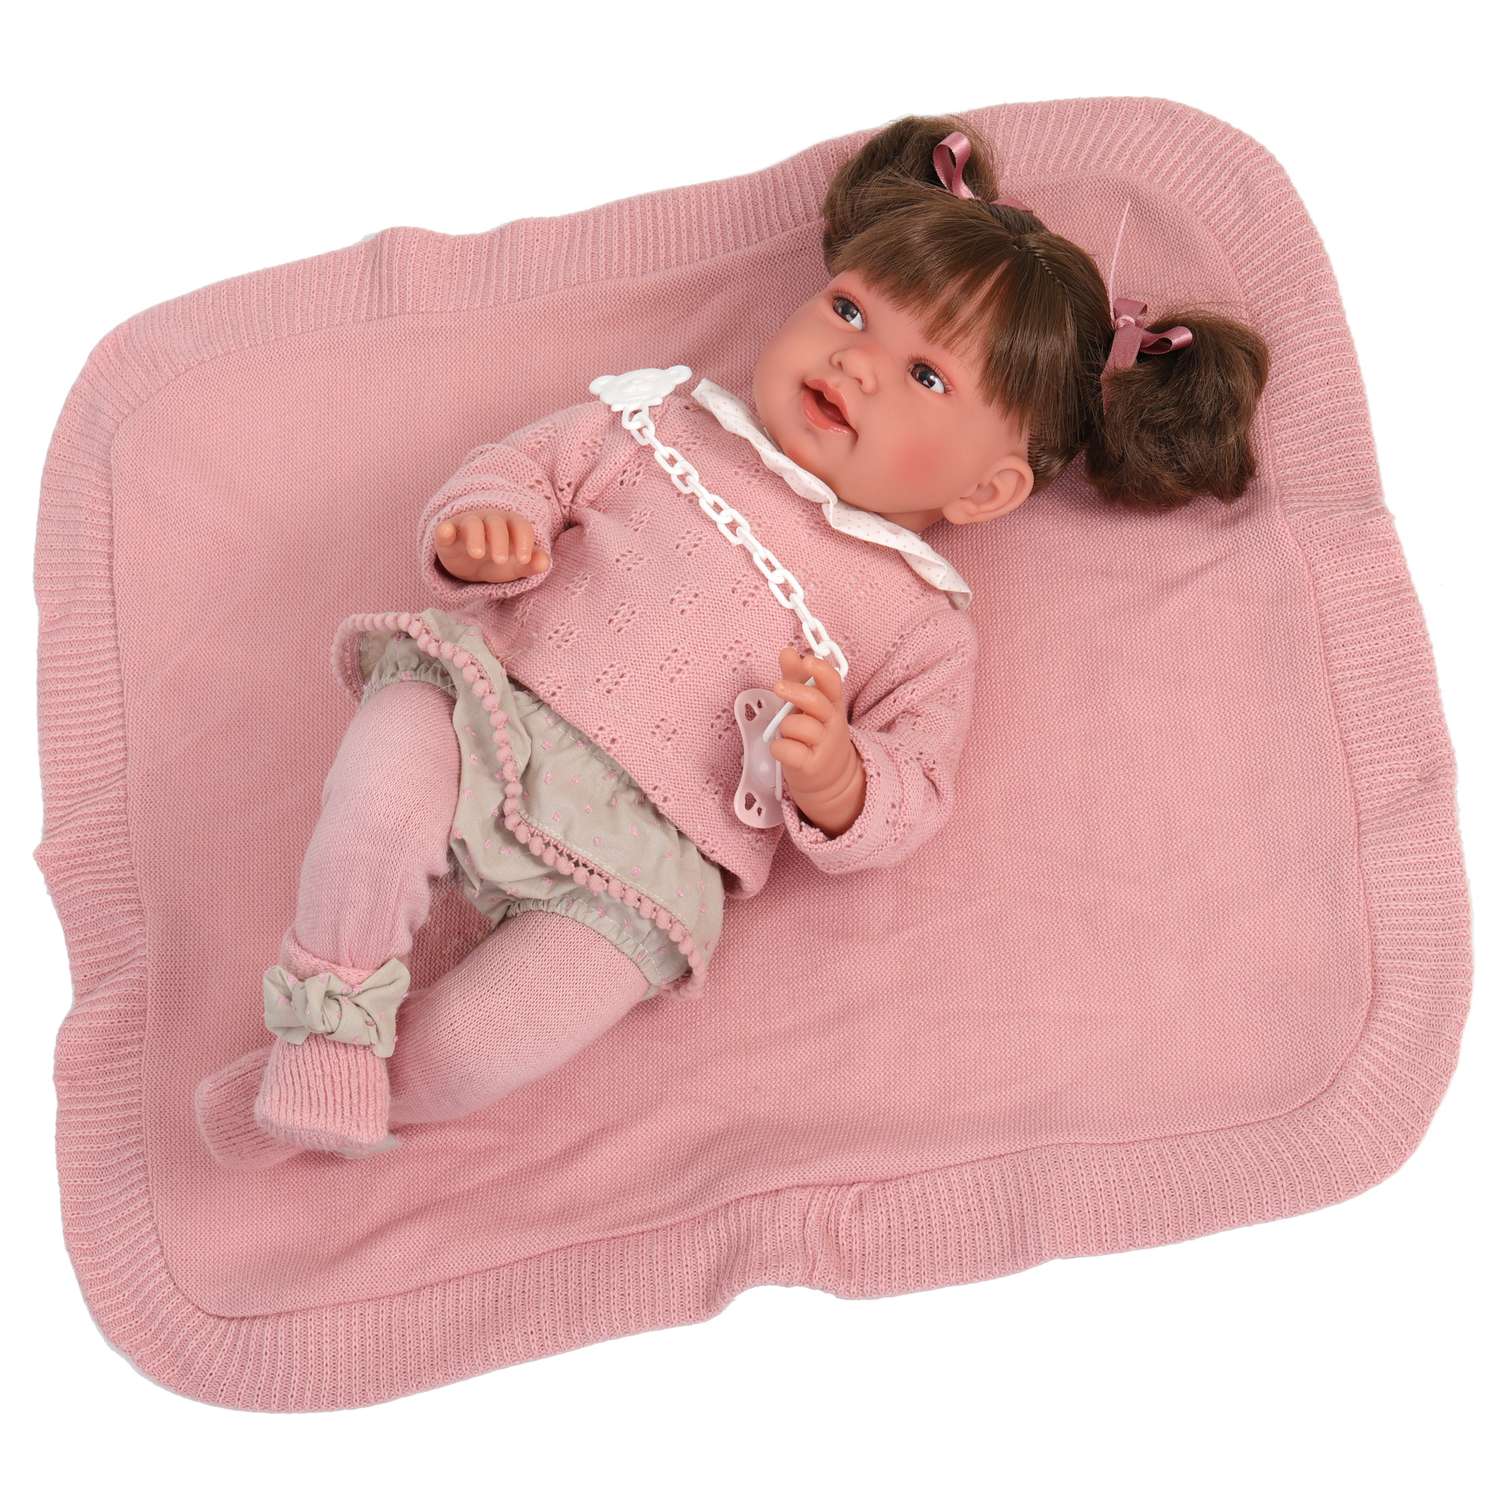 Кукла Antonio Juan Реборн Ника в розовом 40 см мягконабивная 33114 - фото 8